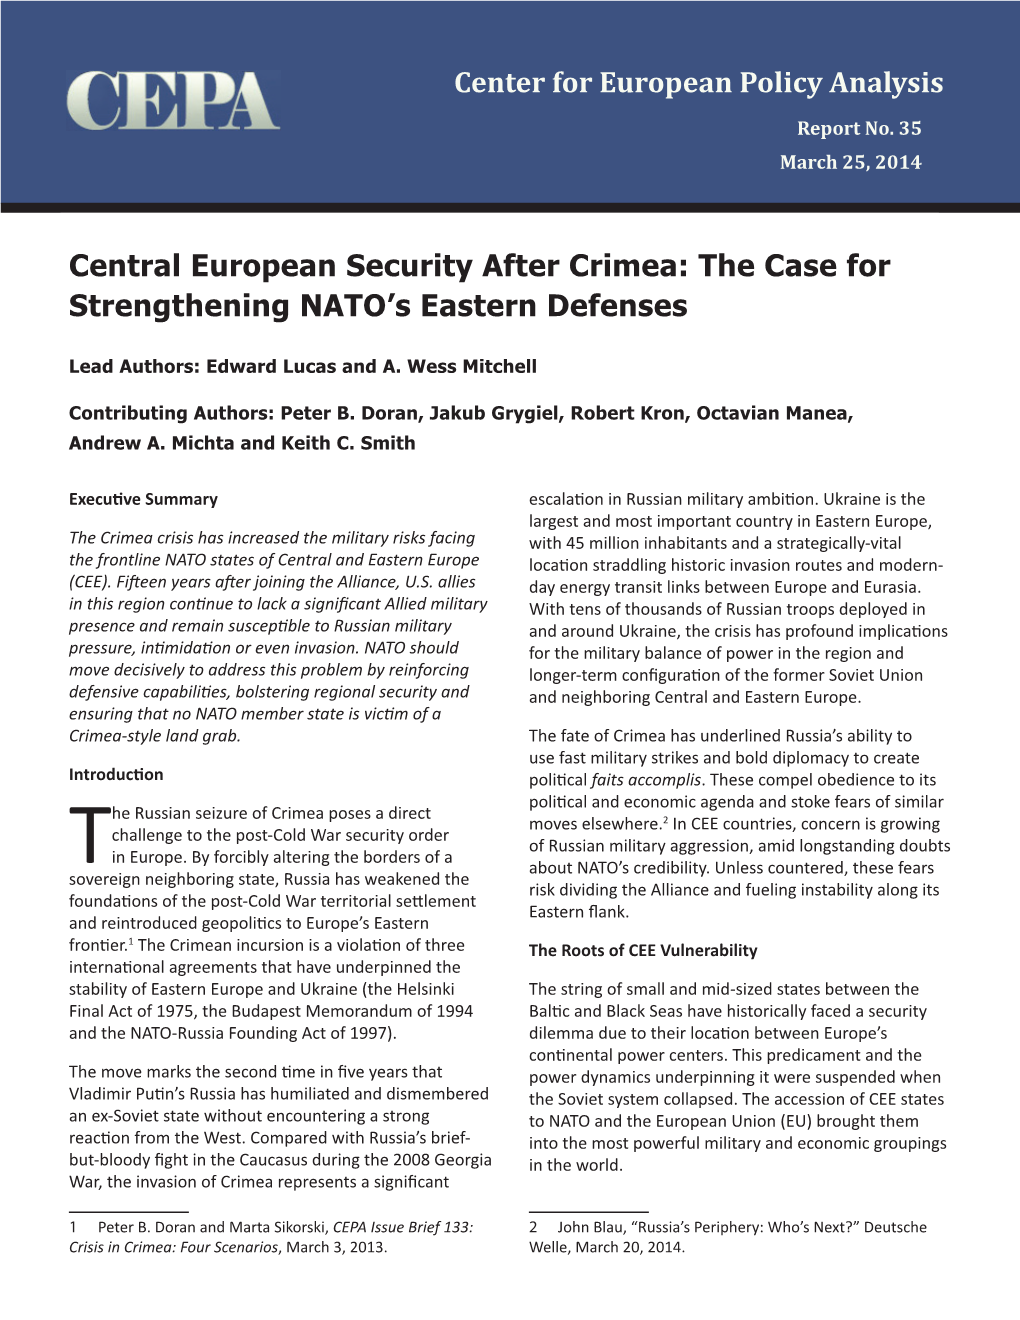 The Case for Strengthening NATO's Eastern Defenses